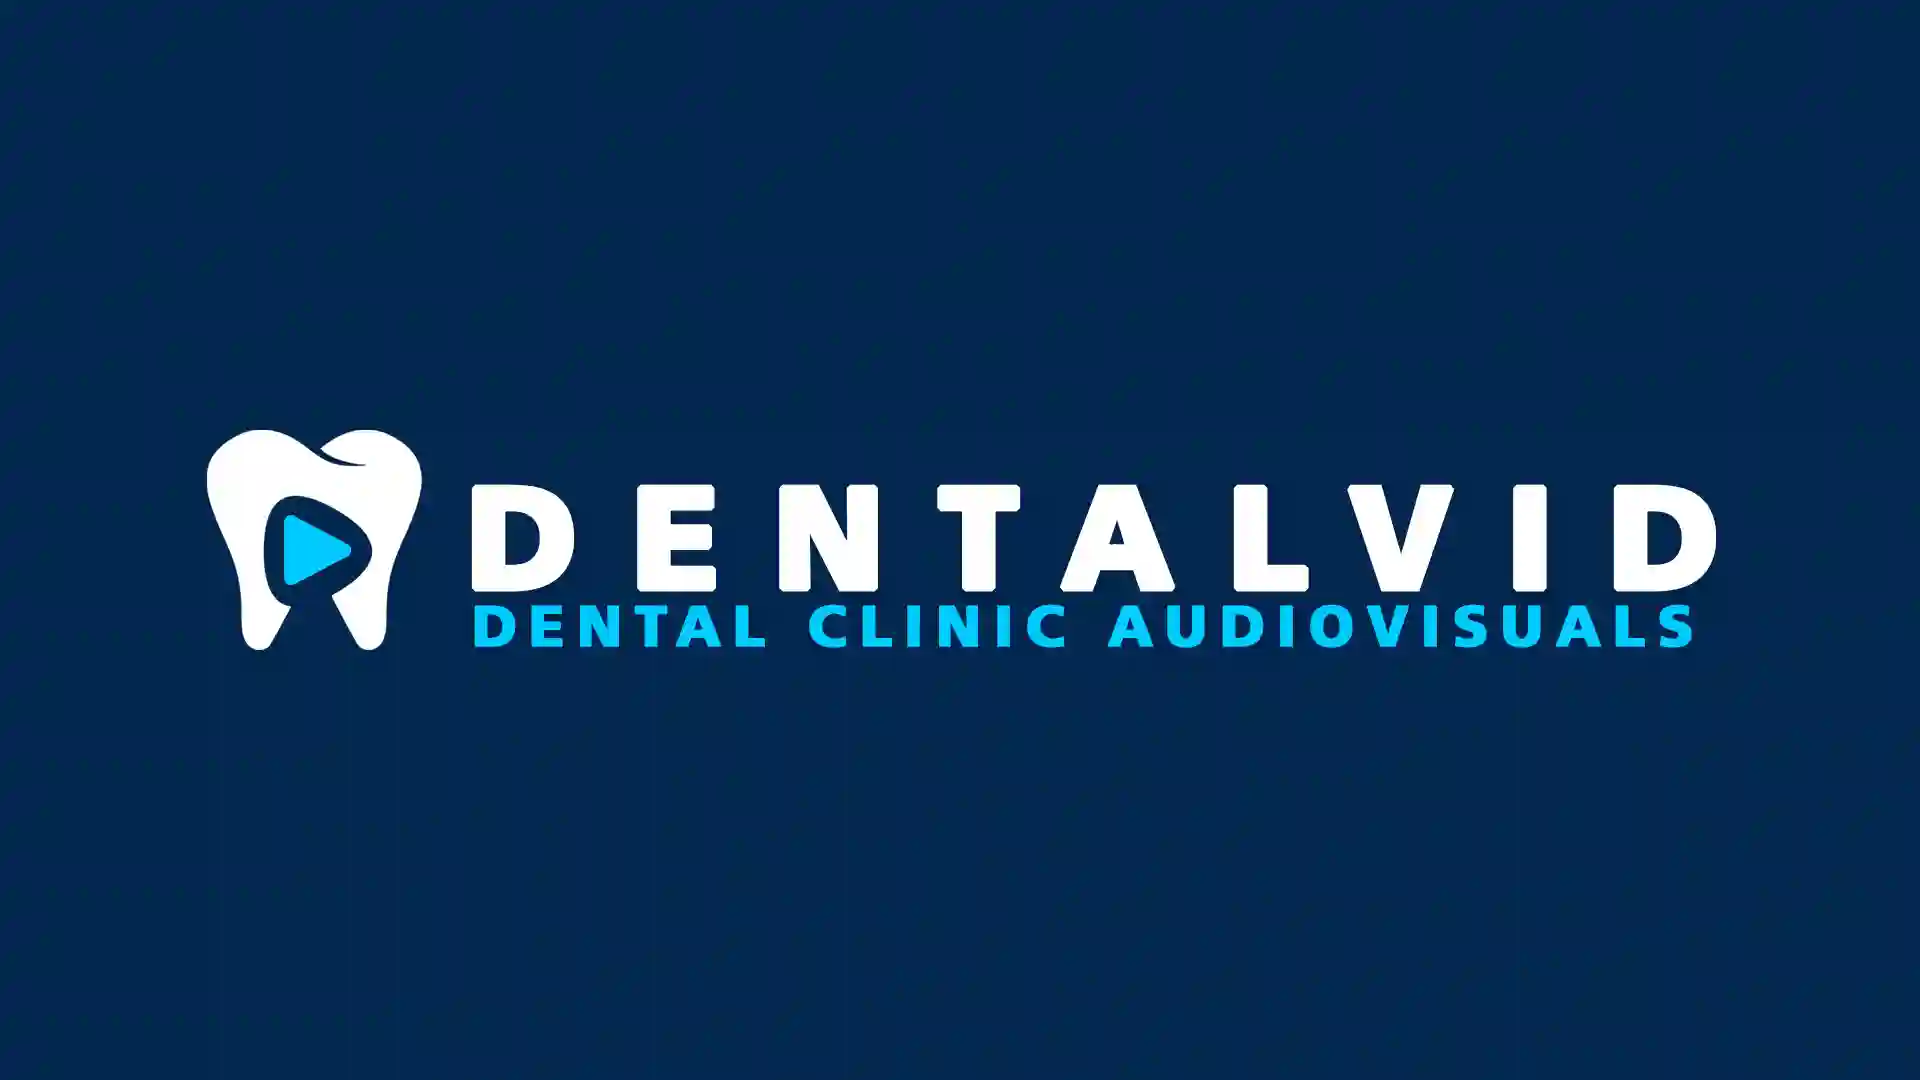 Vídeos de Tratamientos Odontológicos en 3D | DENTALVID